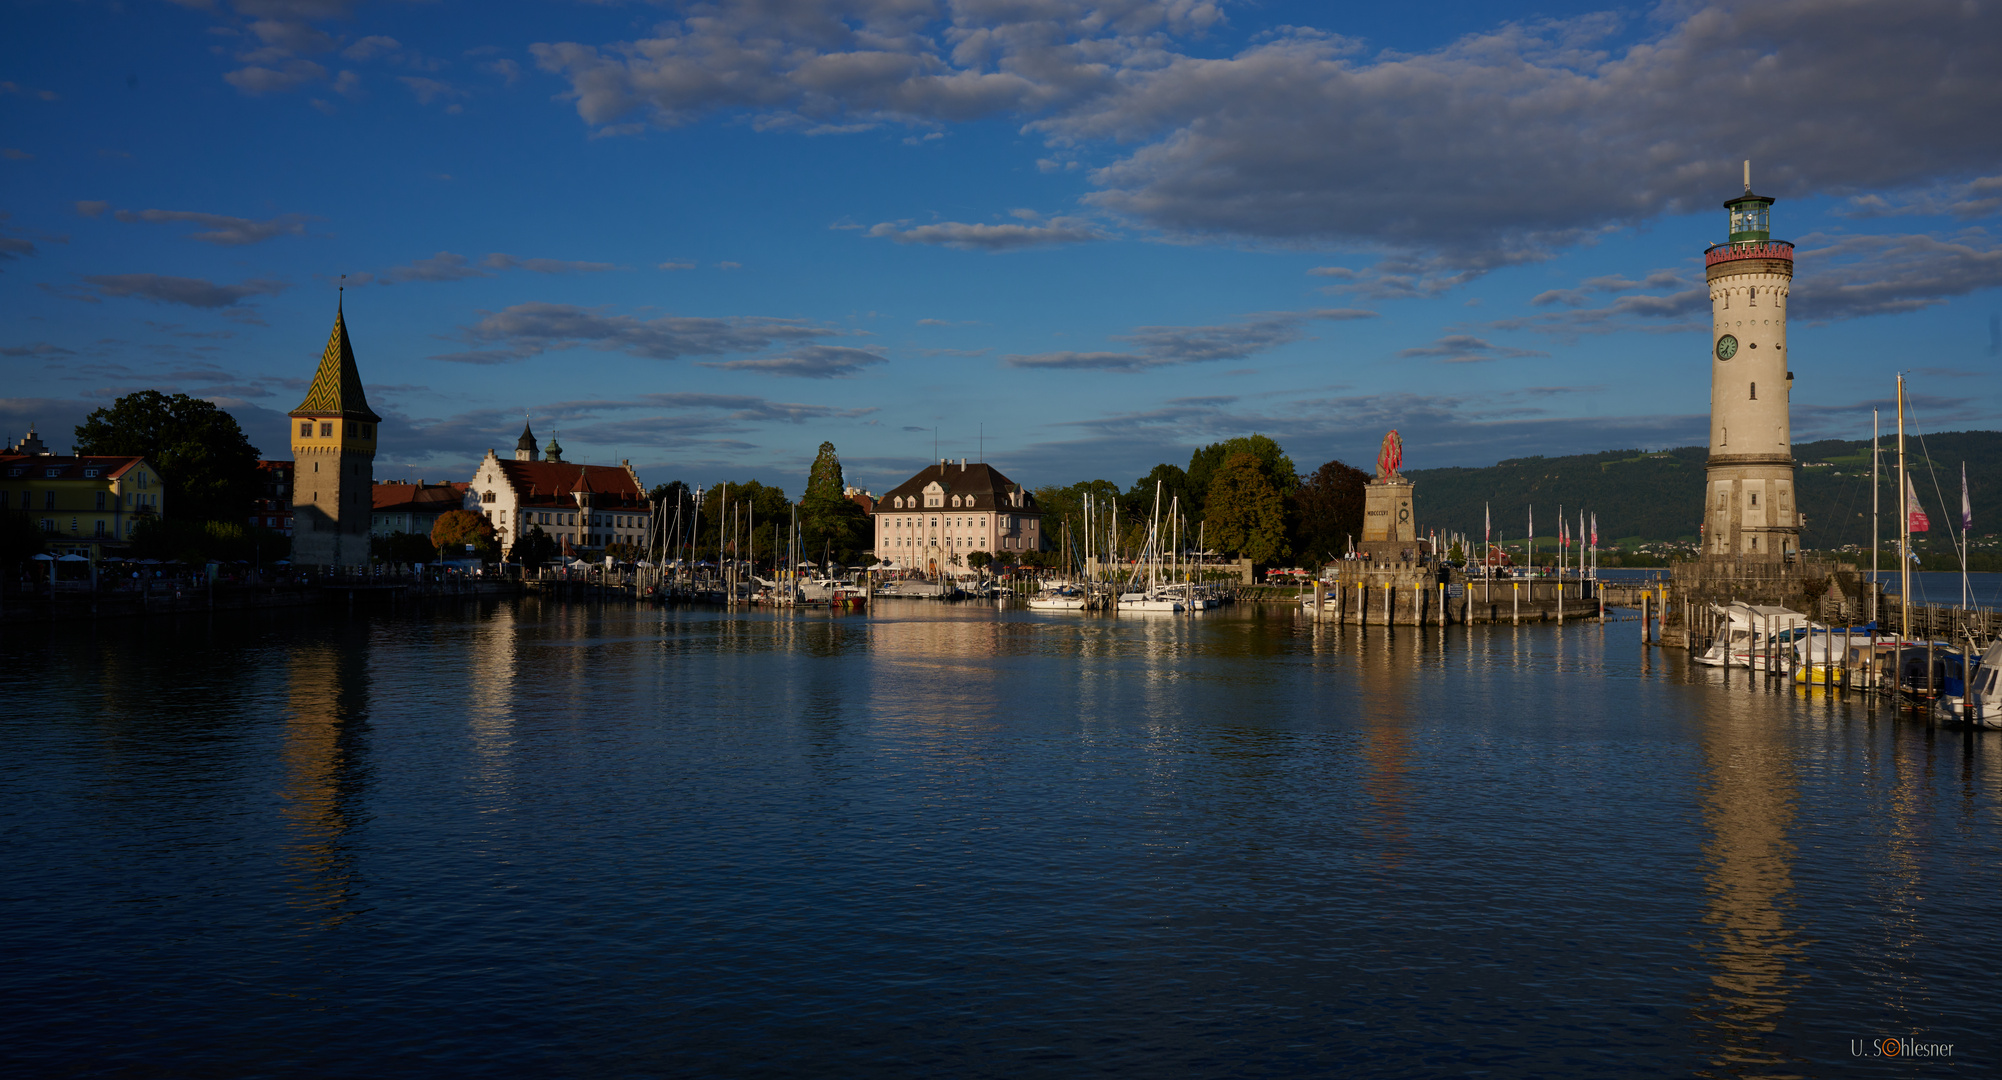 Lindau - Insel Hafen am Bodensee